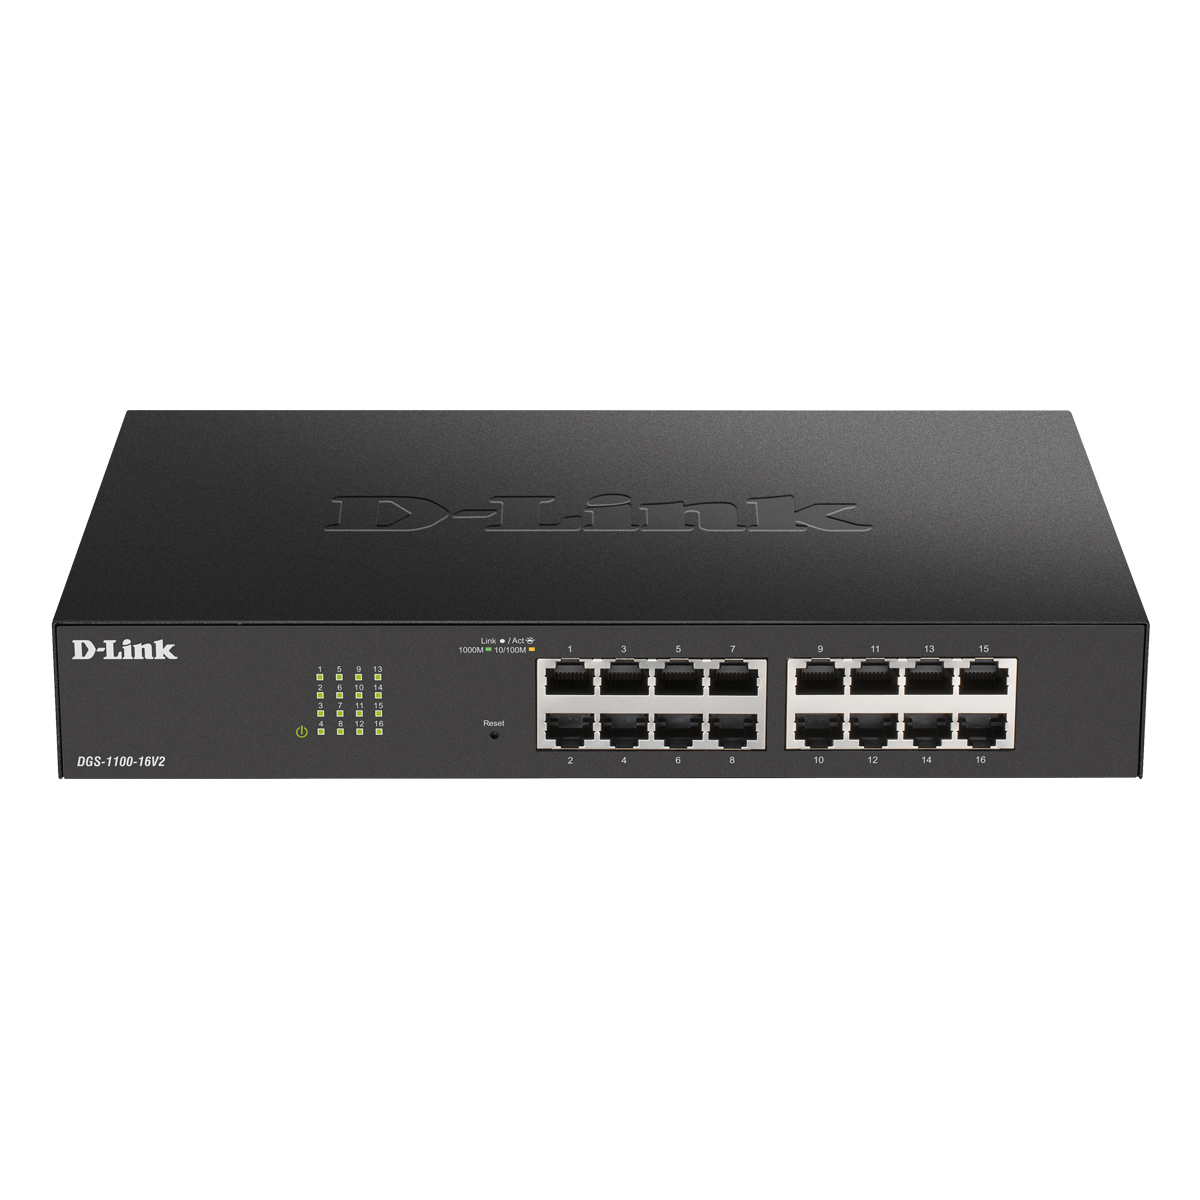 D-Link DGS-1100-16V2 Smart Managed Switch 16x Gigabit Ethernet von D-Link